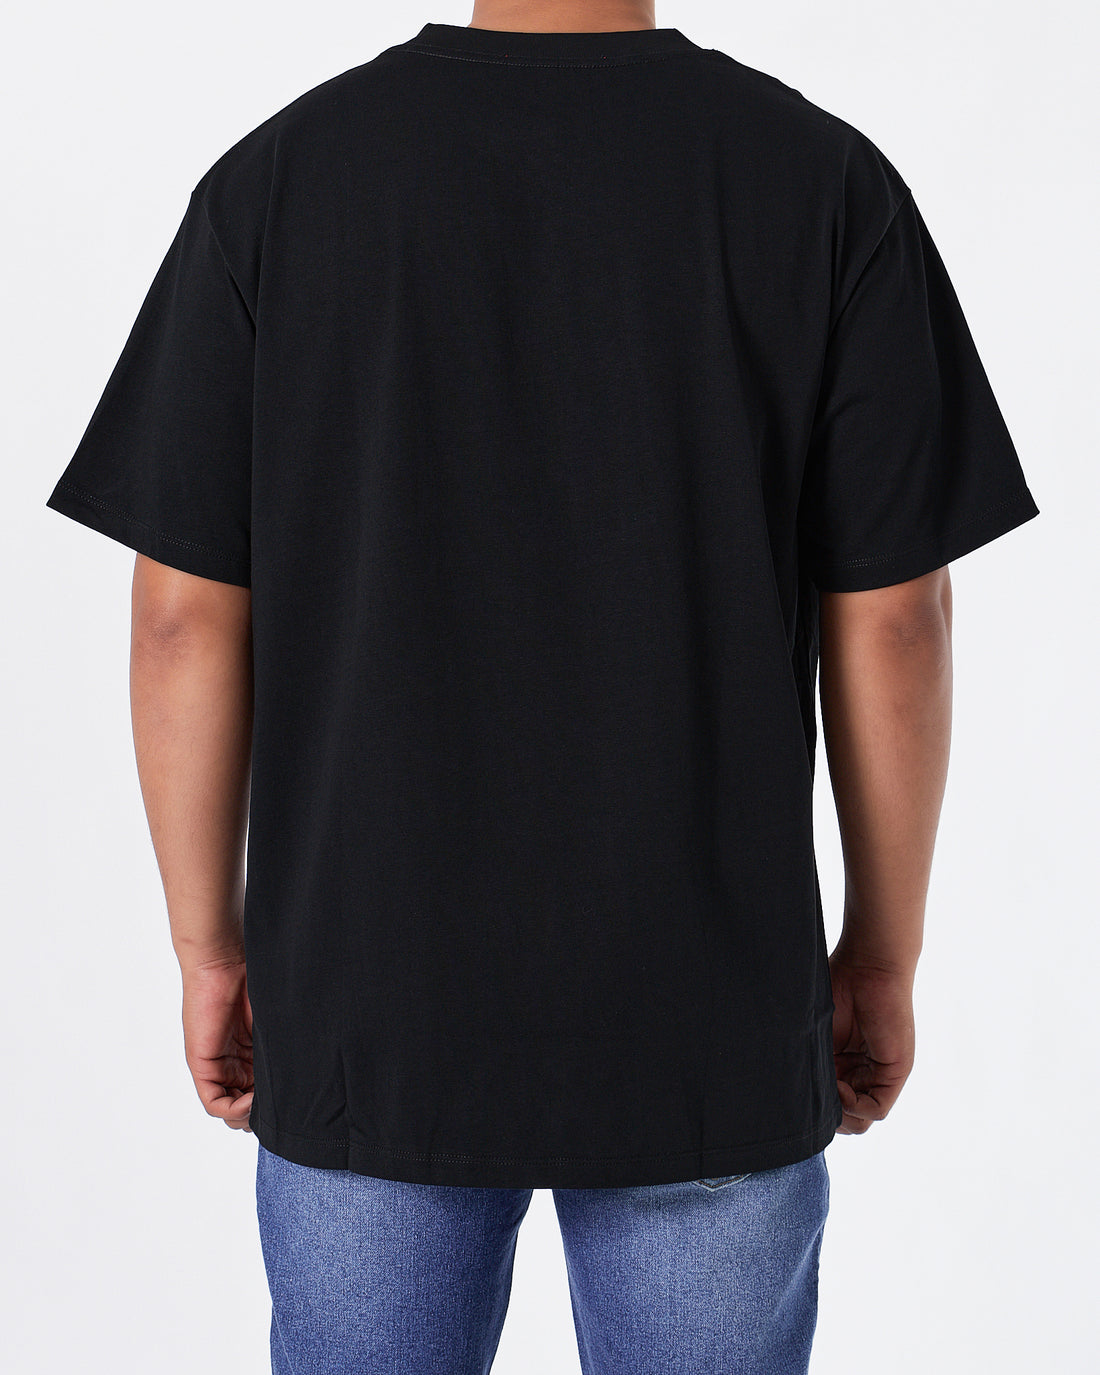 GUC x BAL Men Black T-Shirt 20.90